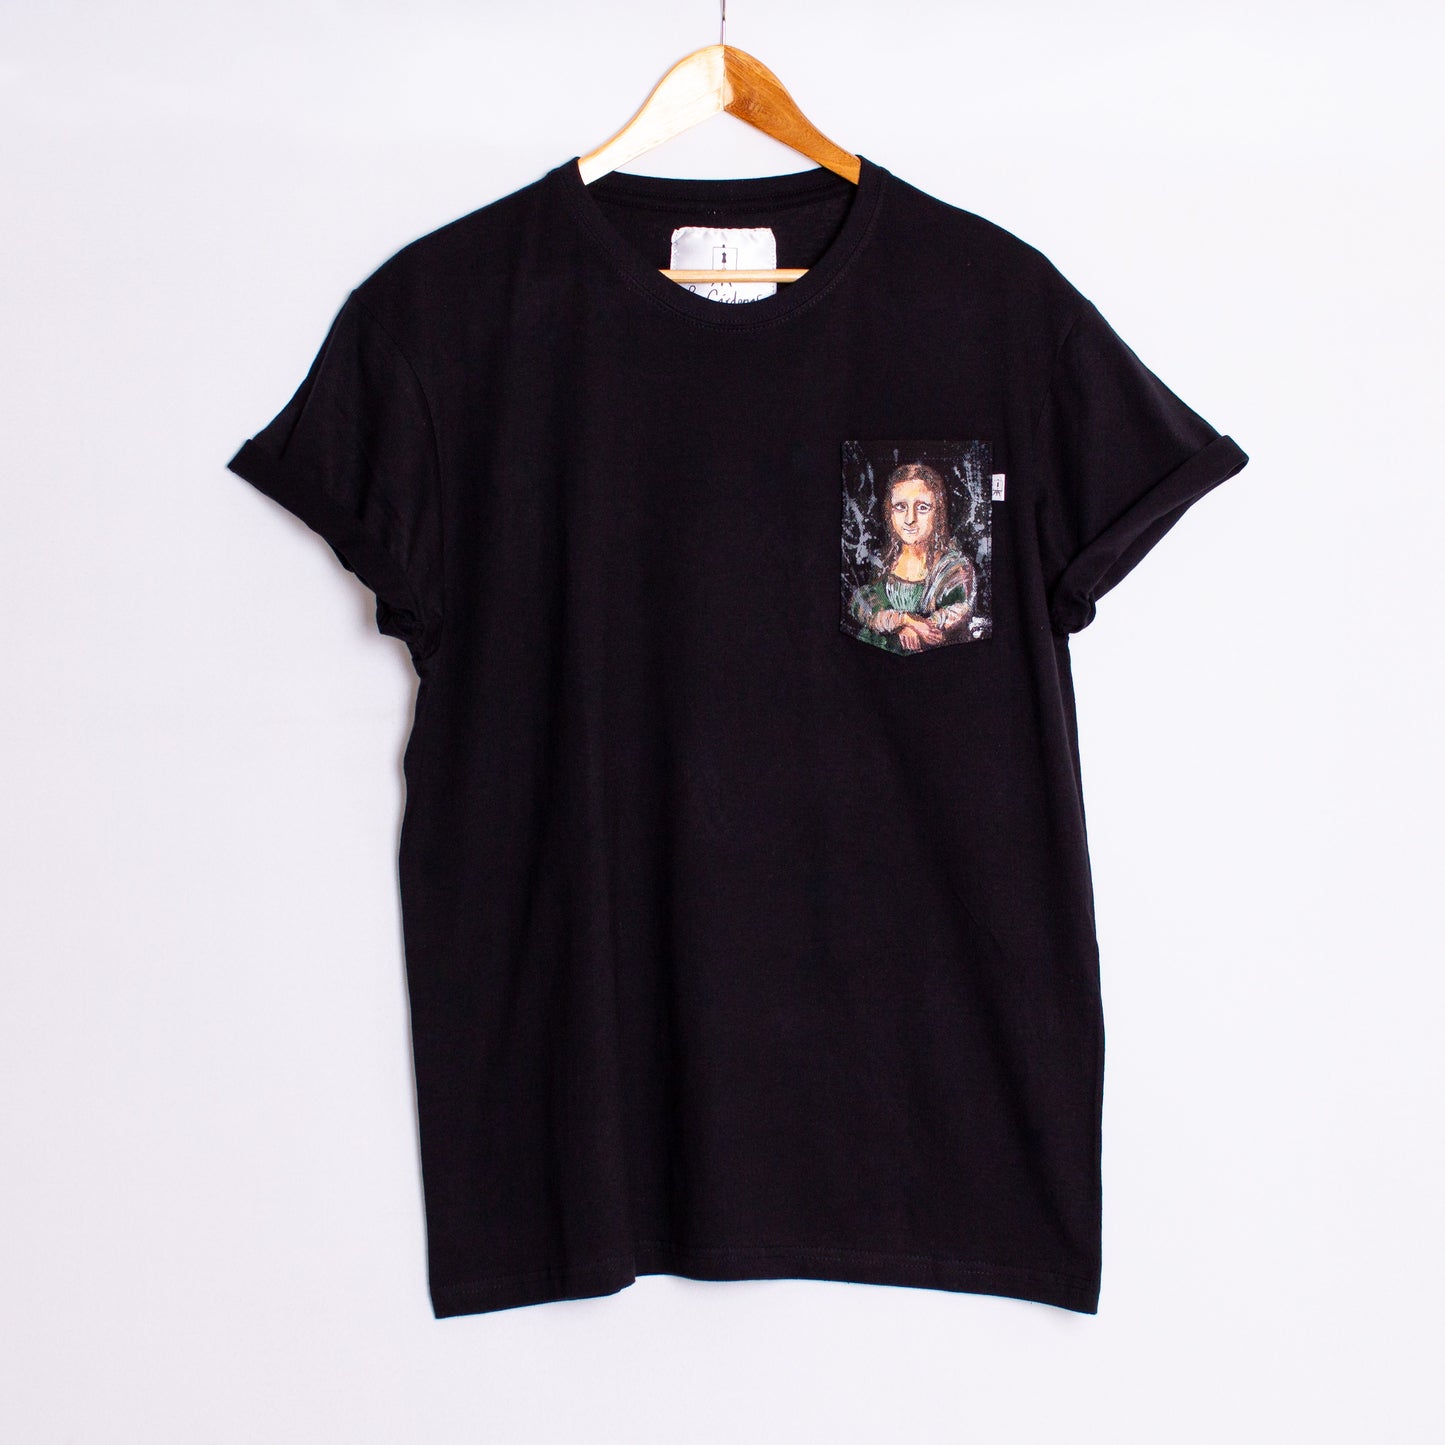 T-Shirt Mona Lisa